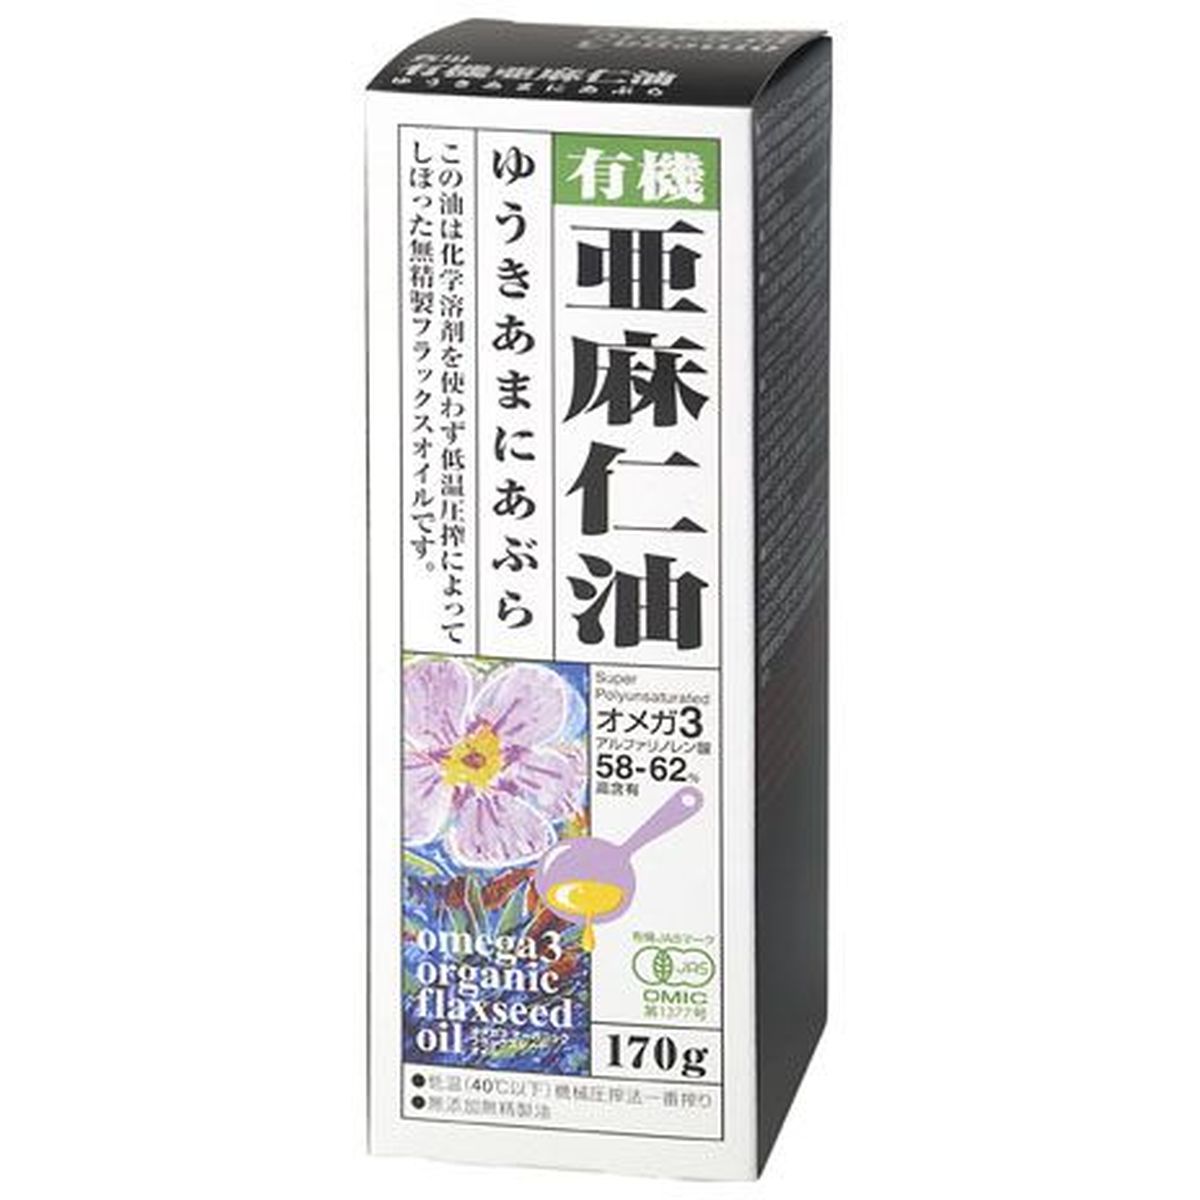 【12個入リ】紅花食品 有機亜麻仁油 170g